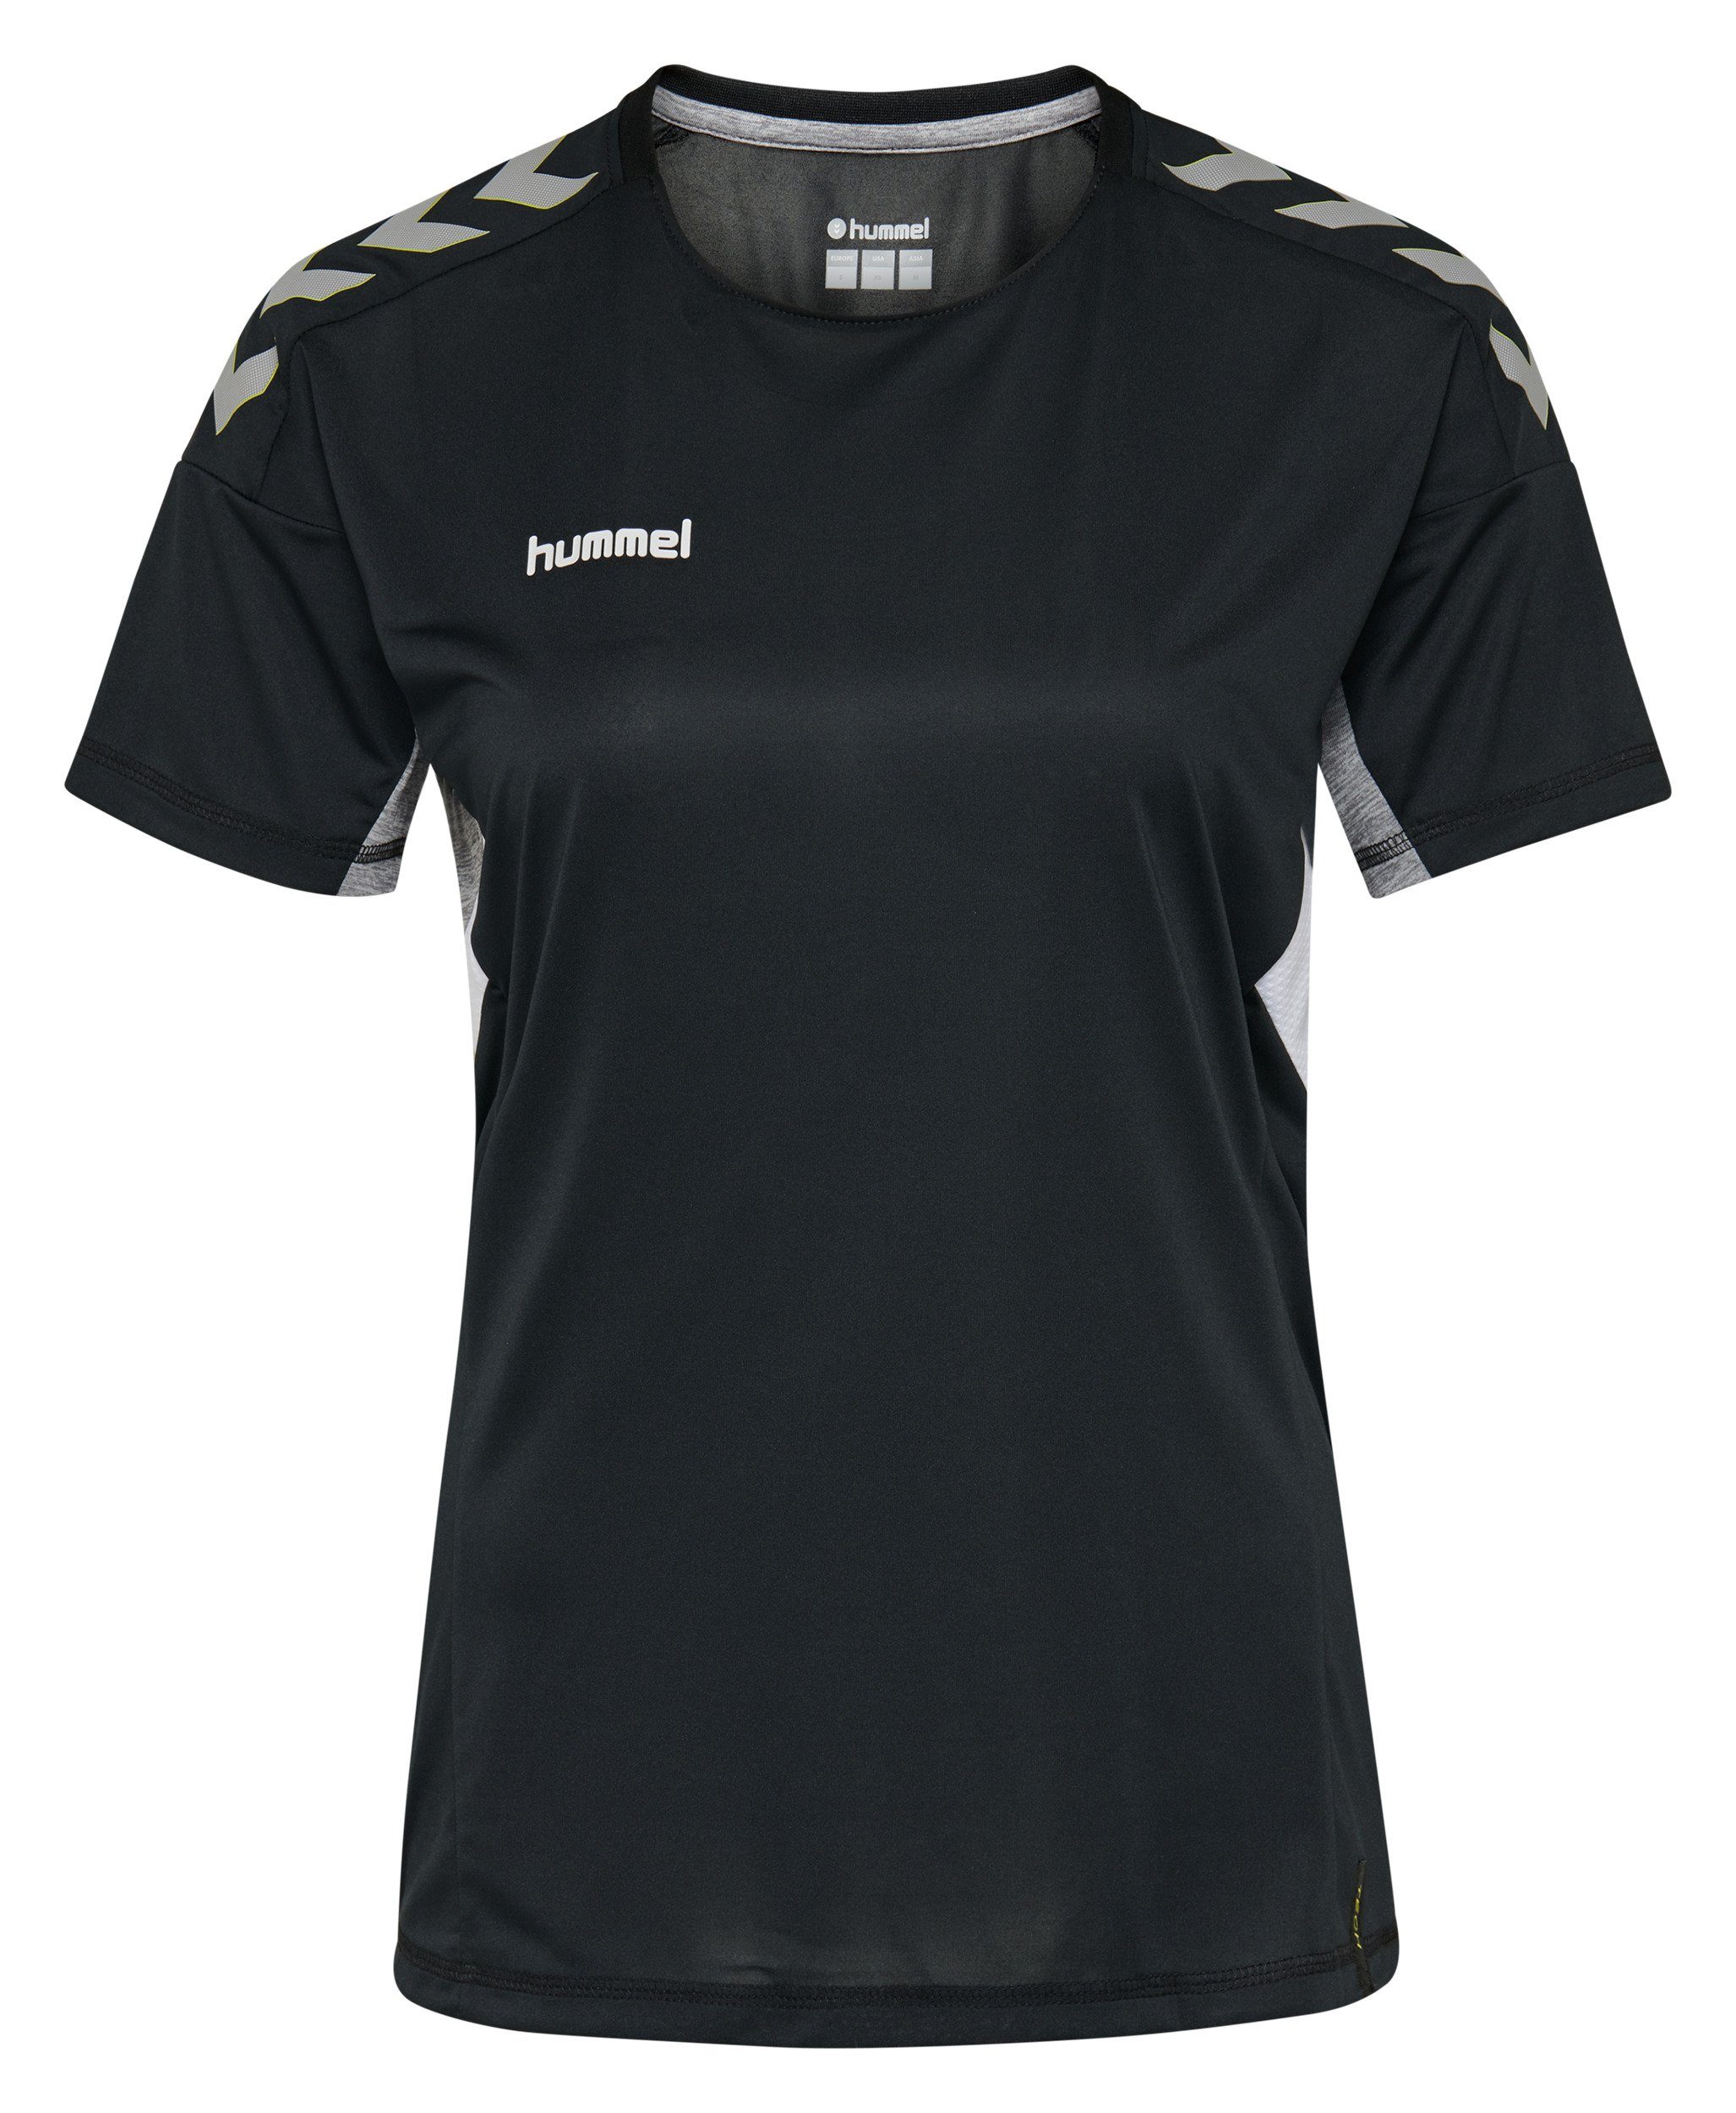 hummel Move Laufshirt Laufshirt Damen Shirt Tech Fitness T-Shirt Sport Trikot schwarz BLACK